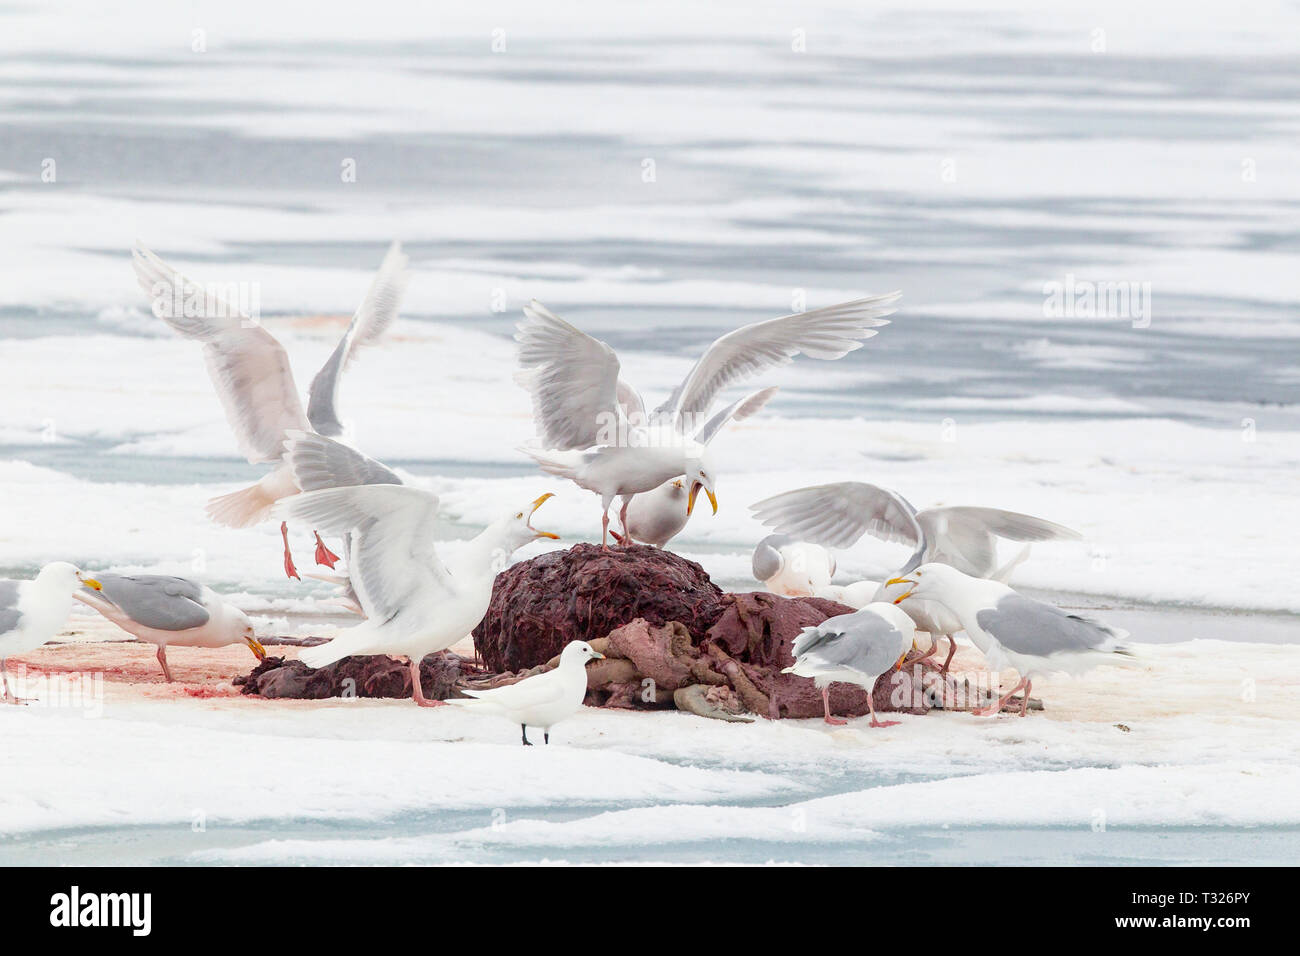 Glaucous Gabbiani mangiare il resto dei morti tricheco, Larus hyperboreus, Spitsbergen, Oceano Artico, Norvegia Foto Stock